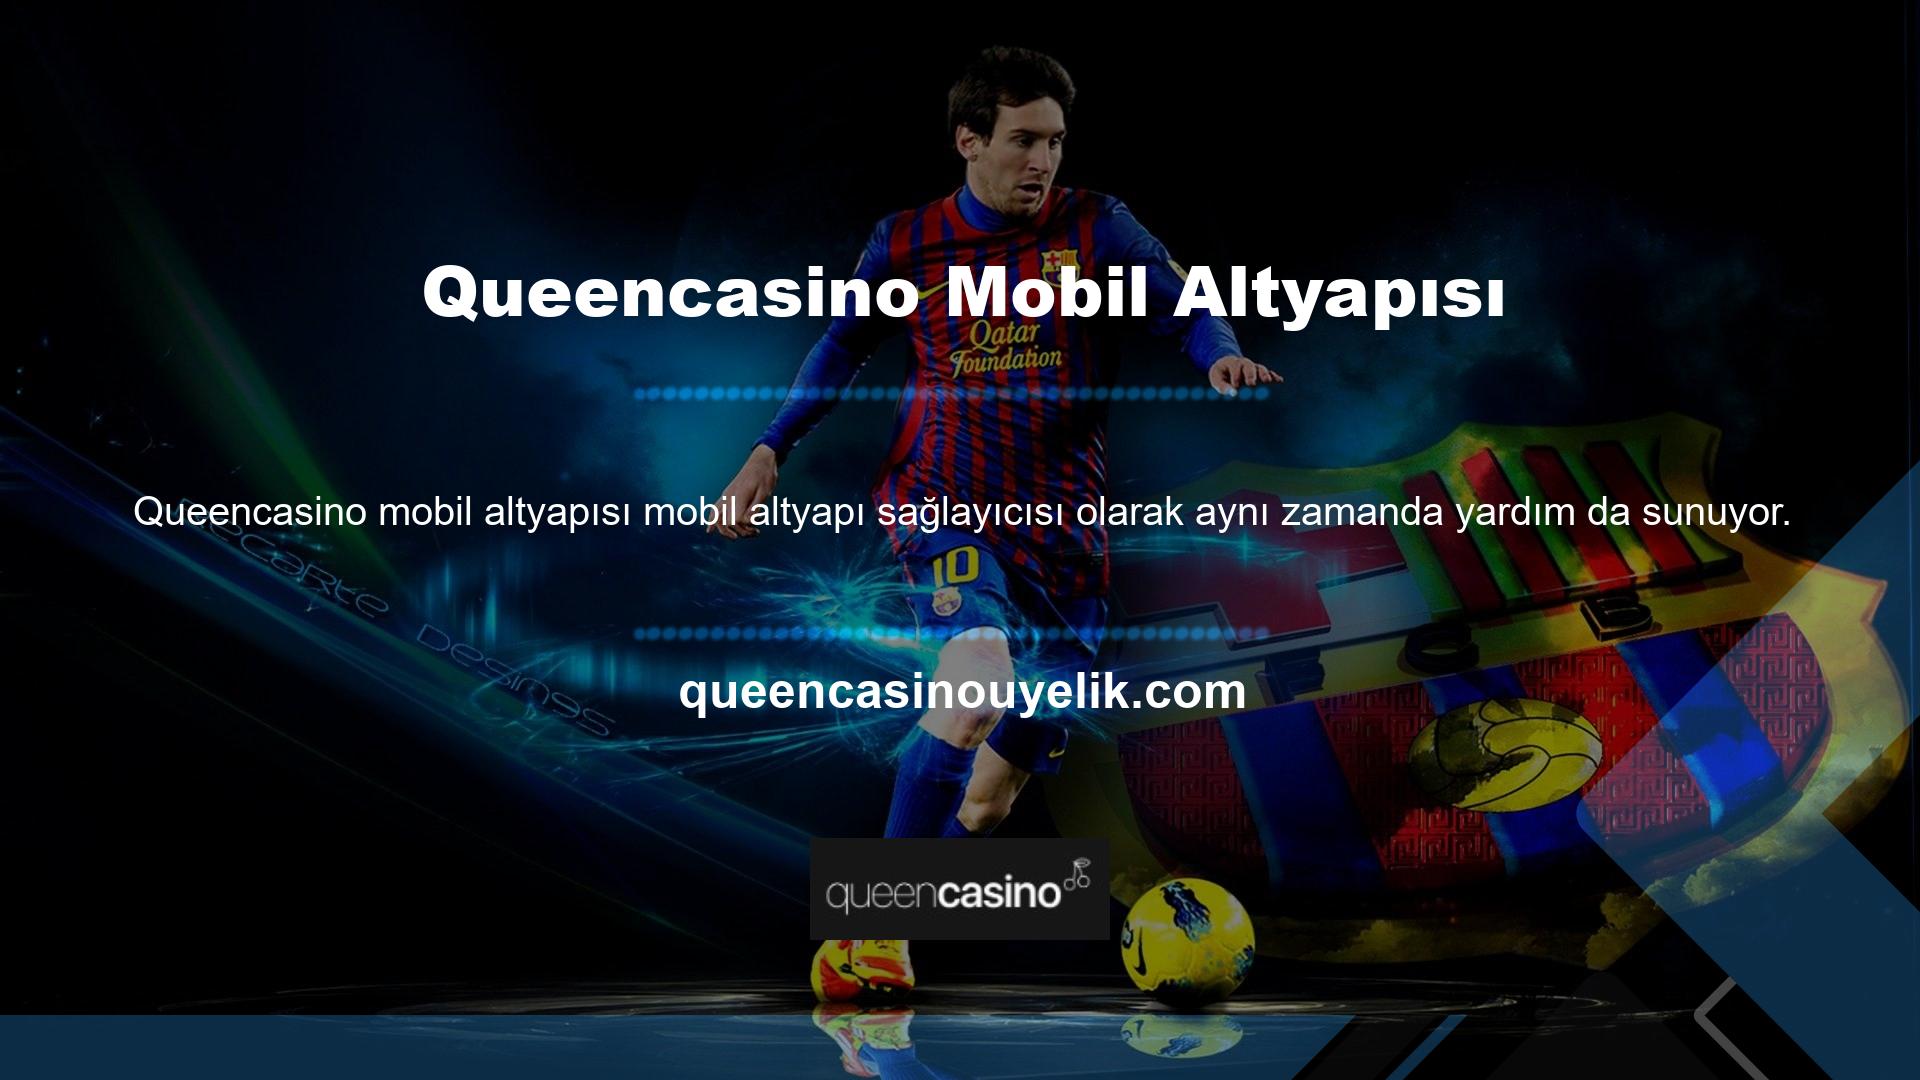 Queencasino mobil uygulaması, desteklenen bir web tarayıcısı olduğu için mevcut giriş bilgilerinizle açılacaktır